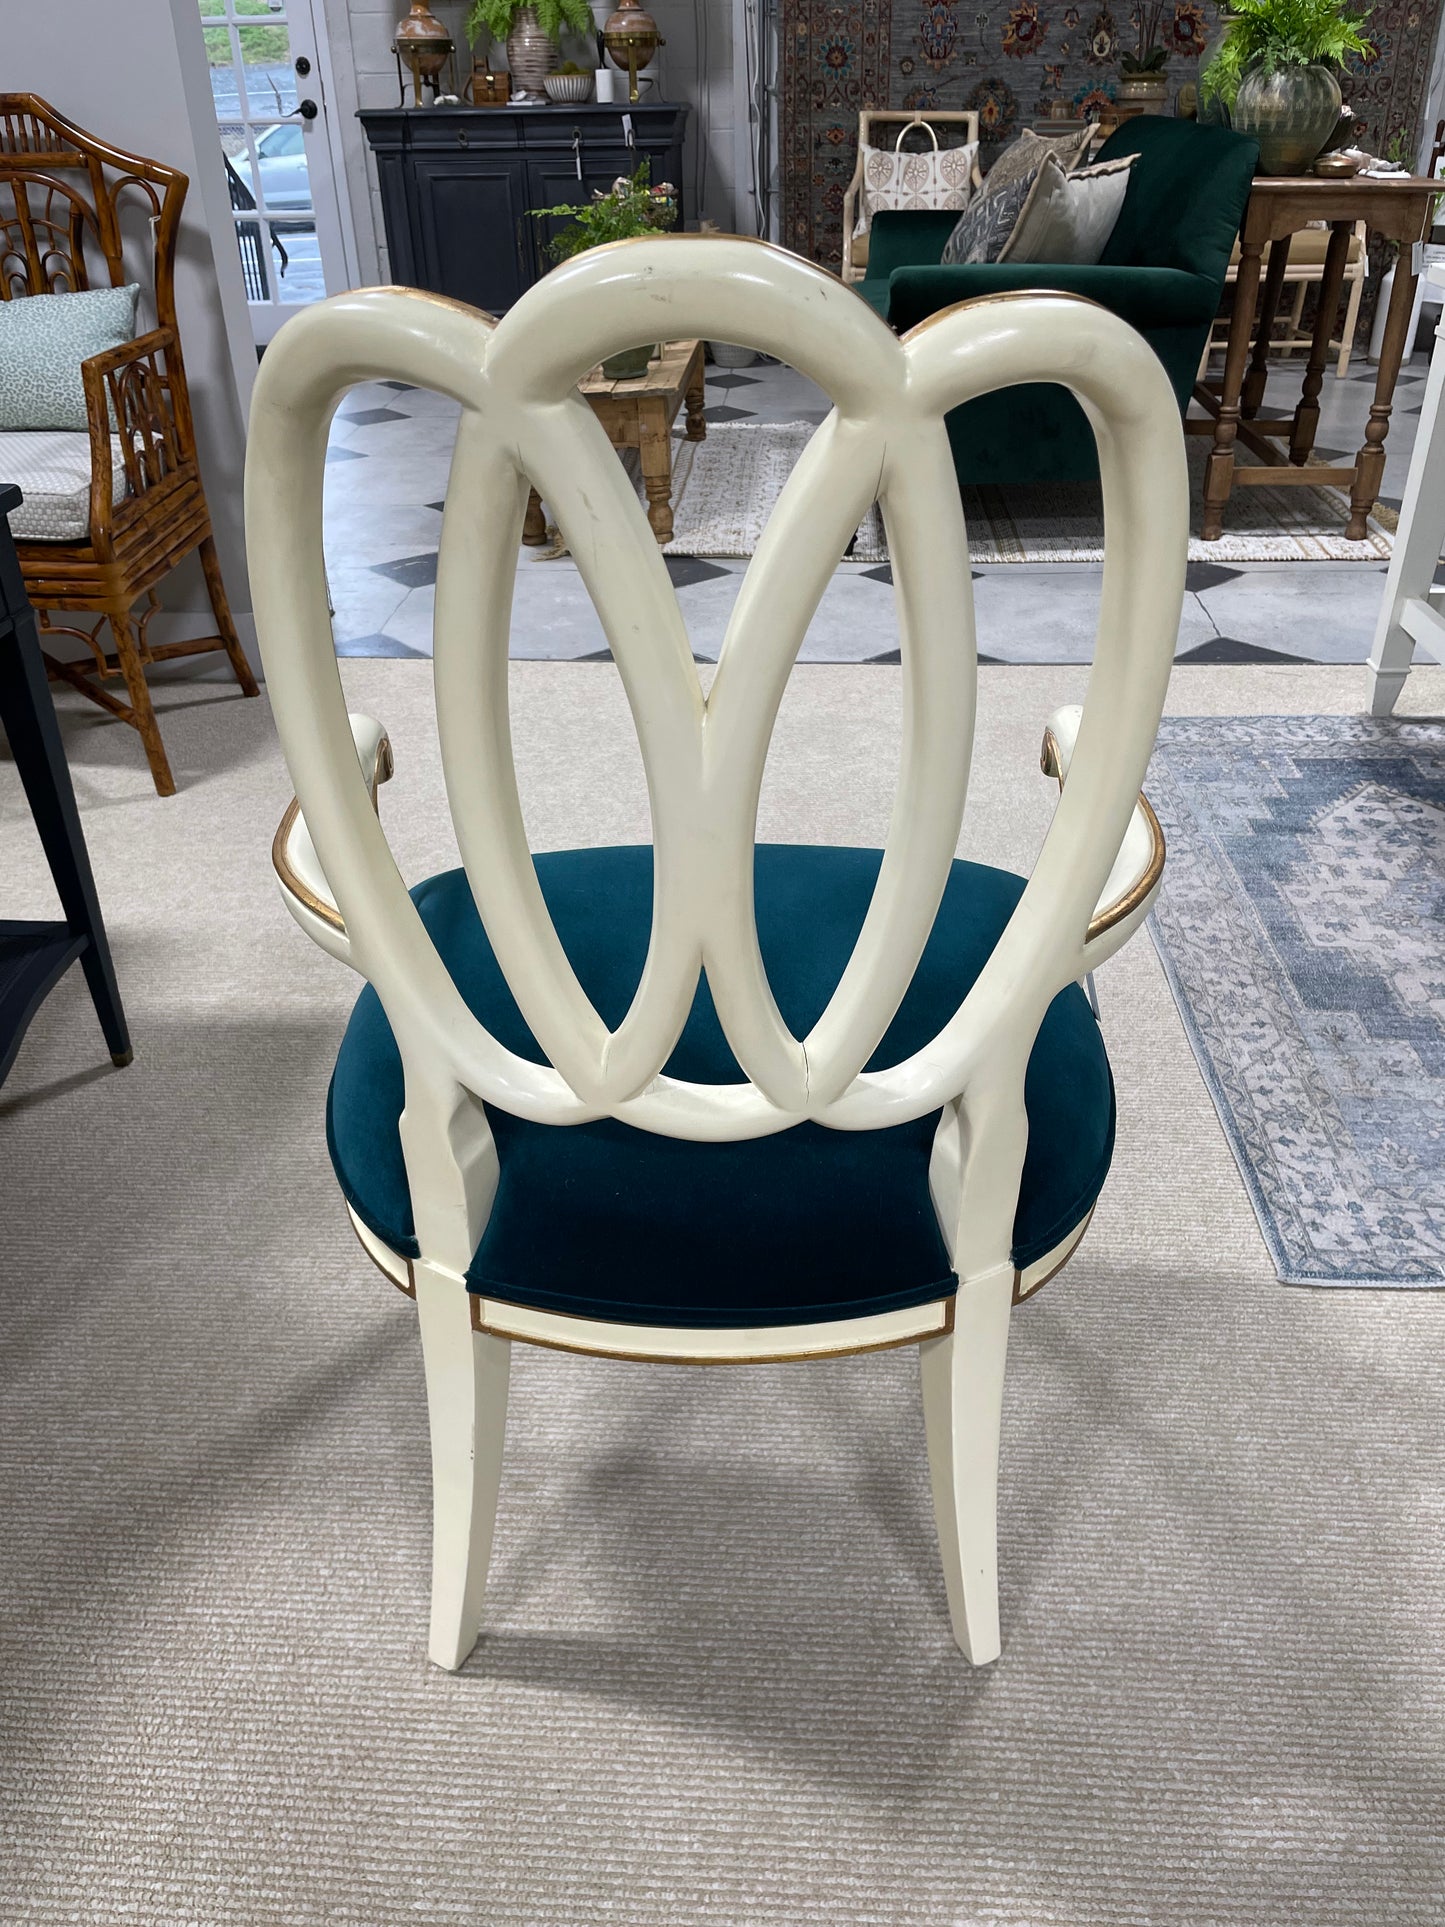 Peacock velvet arm chair